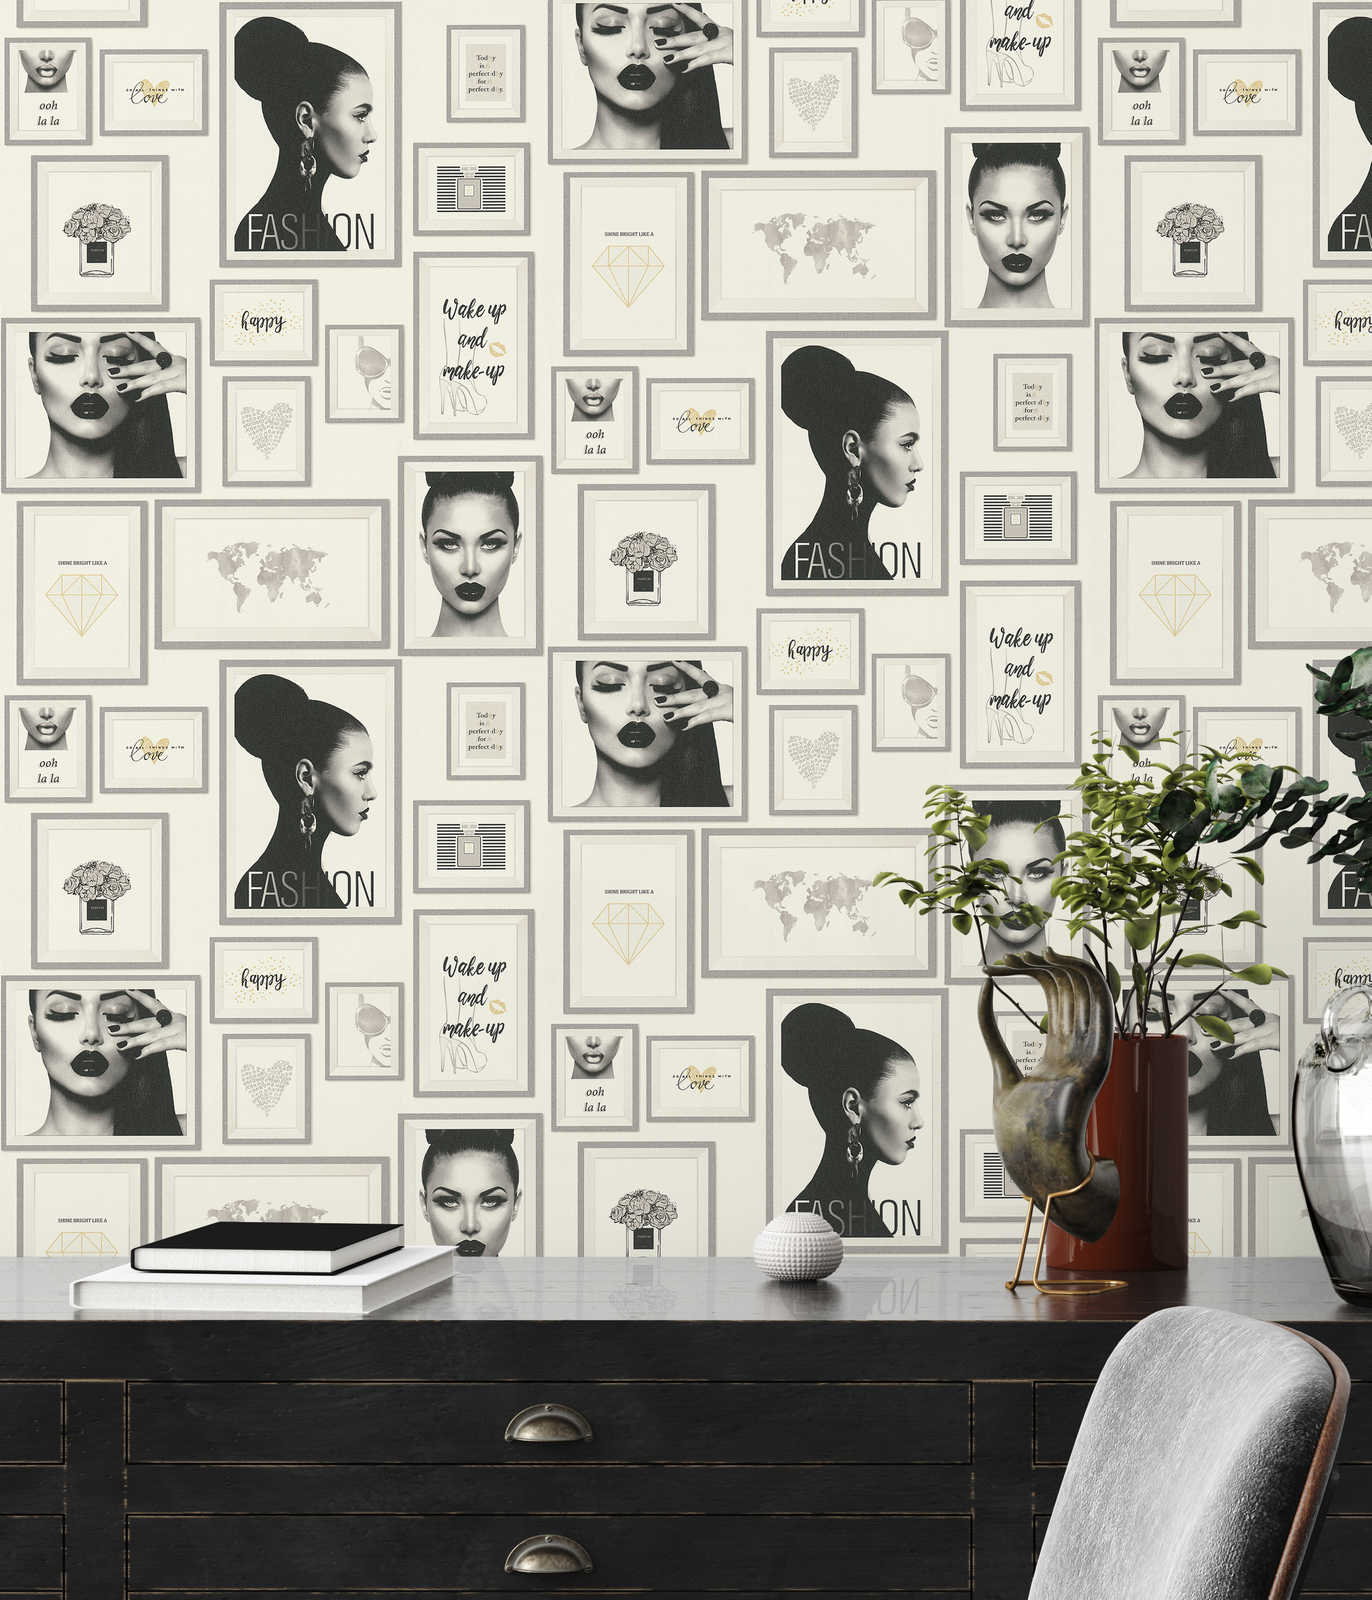             Wallpaper Fashion Design with wall decor - silver, black, white
        